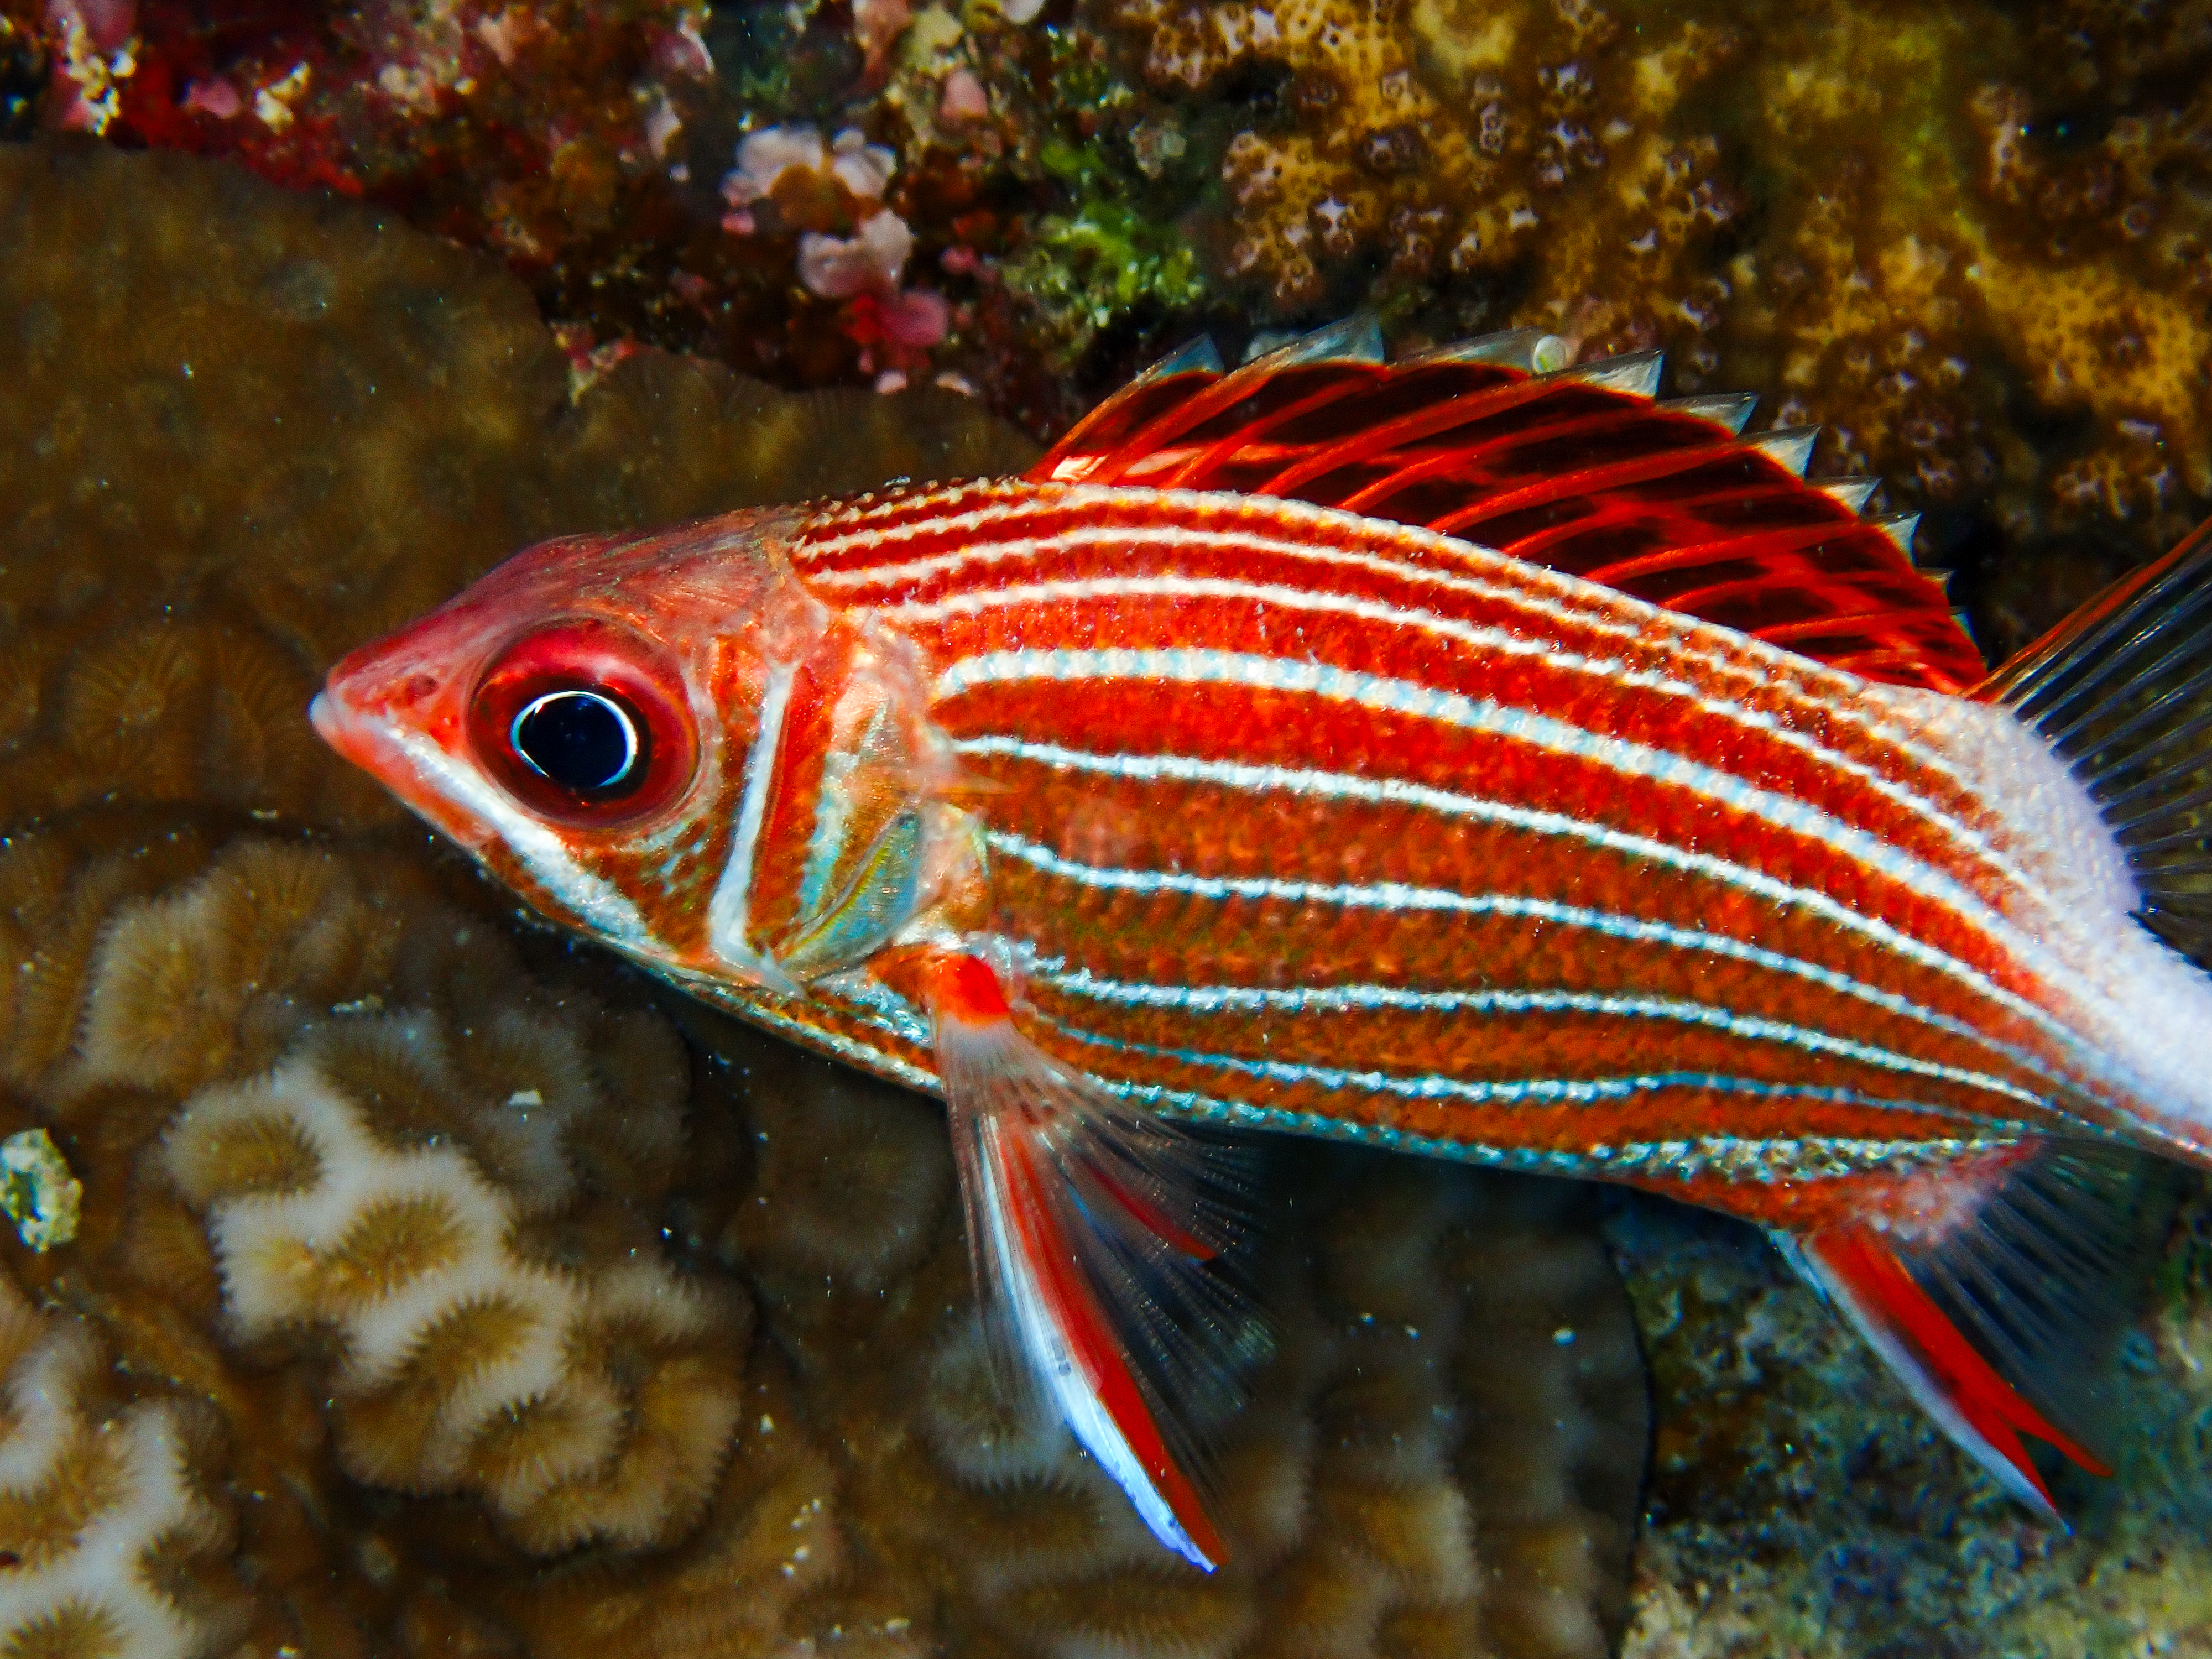 Crown squirrellfish